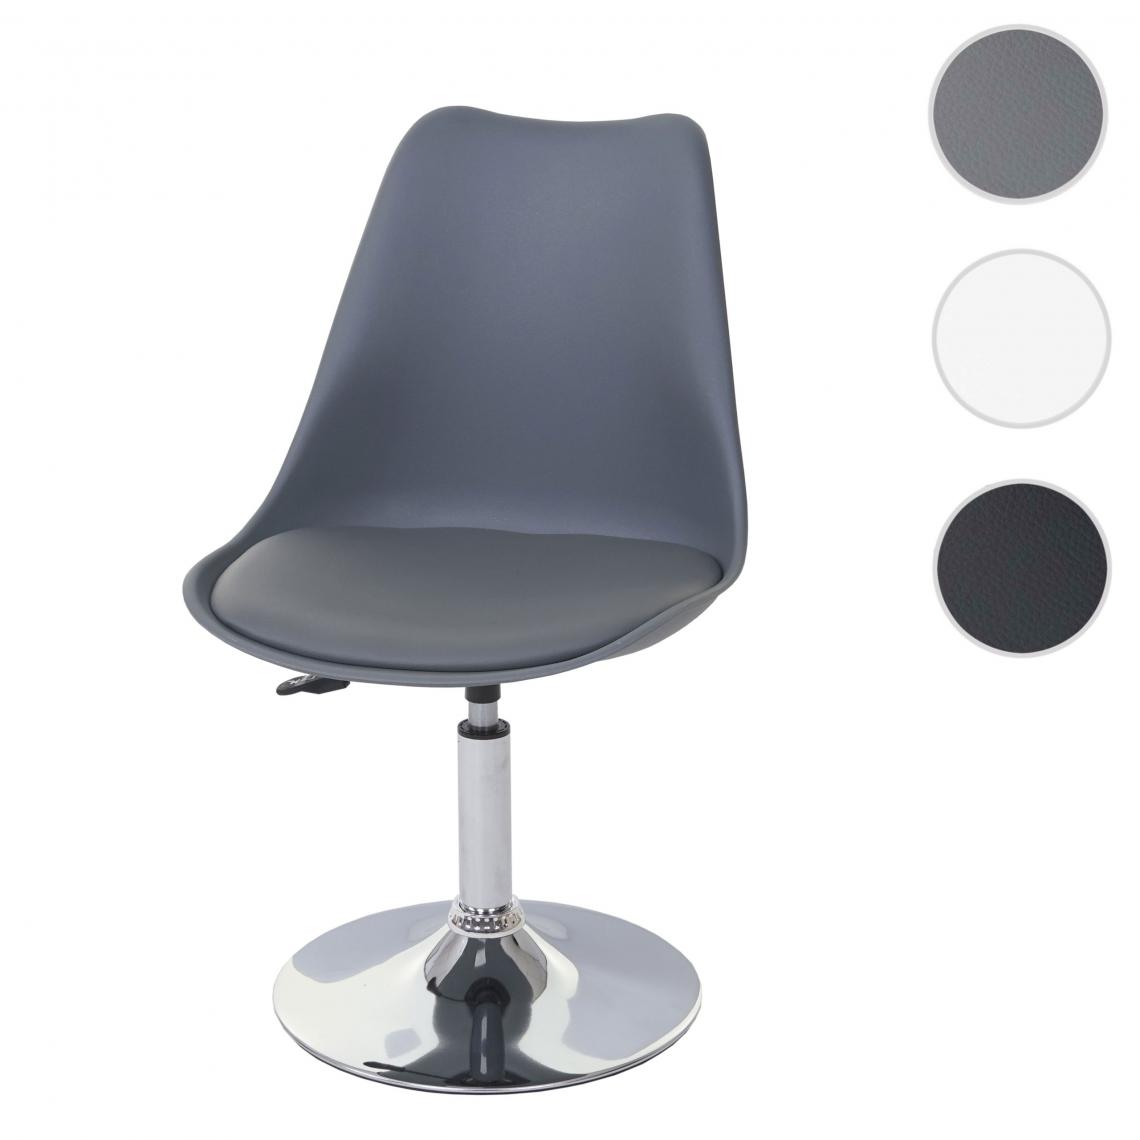 Mendler - Chaise pivotante Malmö T501, chaise de cuisine, réglable en hauteur, similicuir ~ gris foncé, socle chromé - Chaises